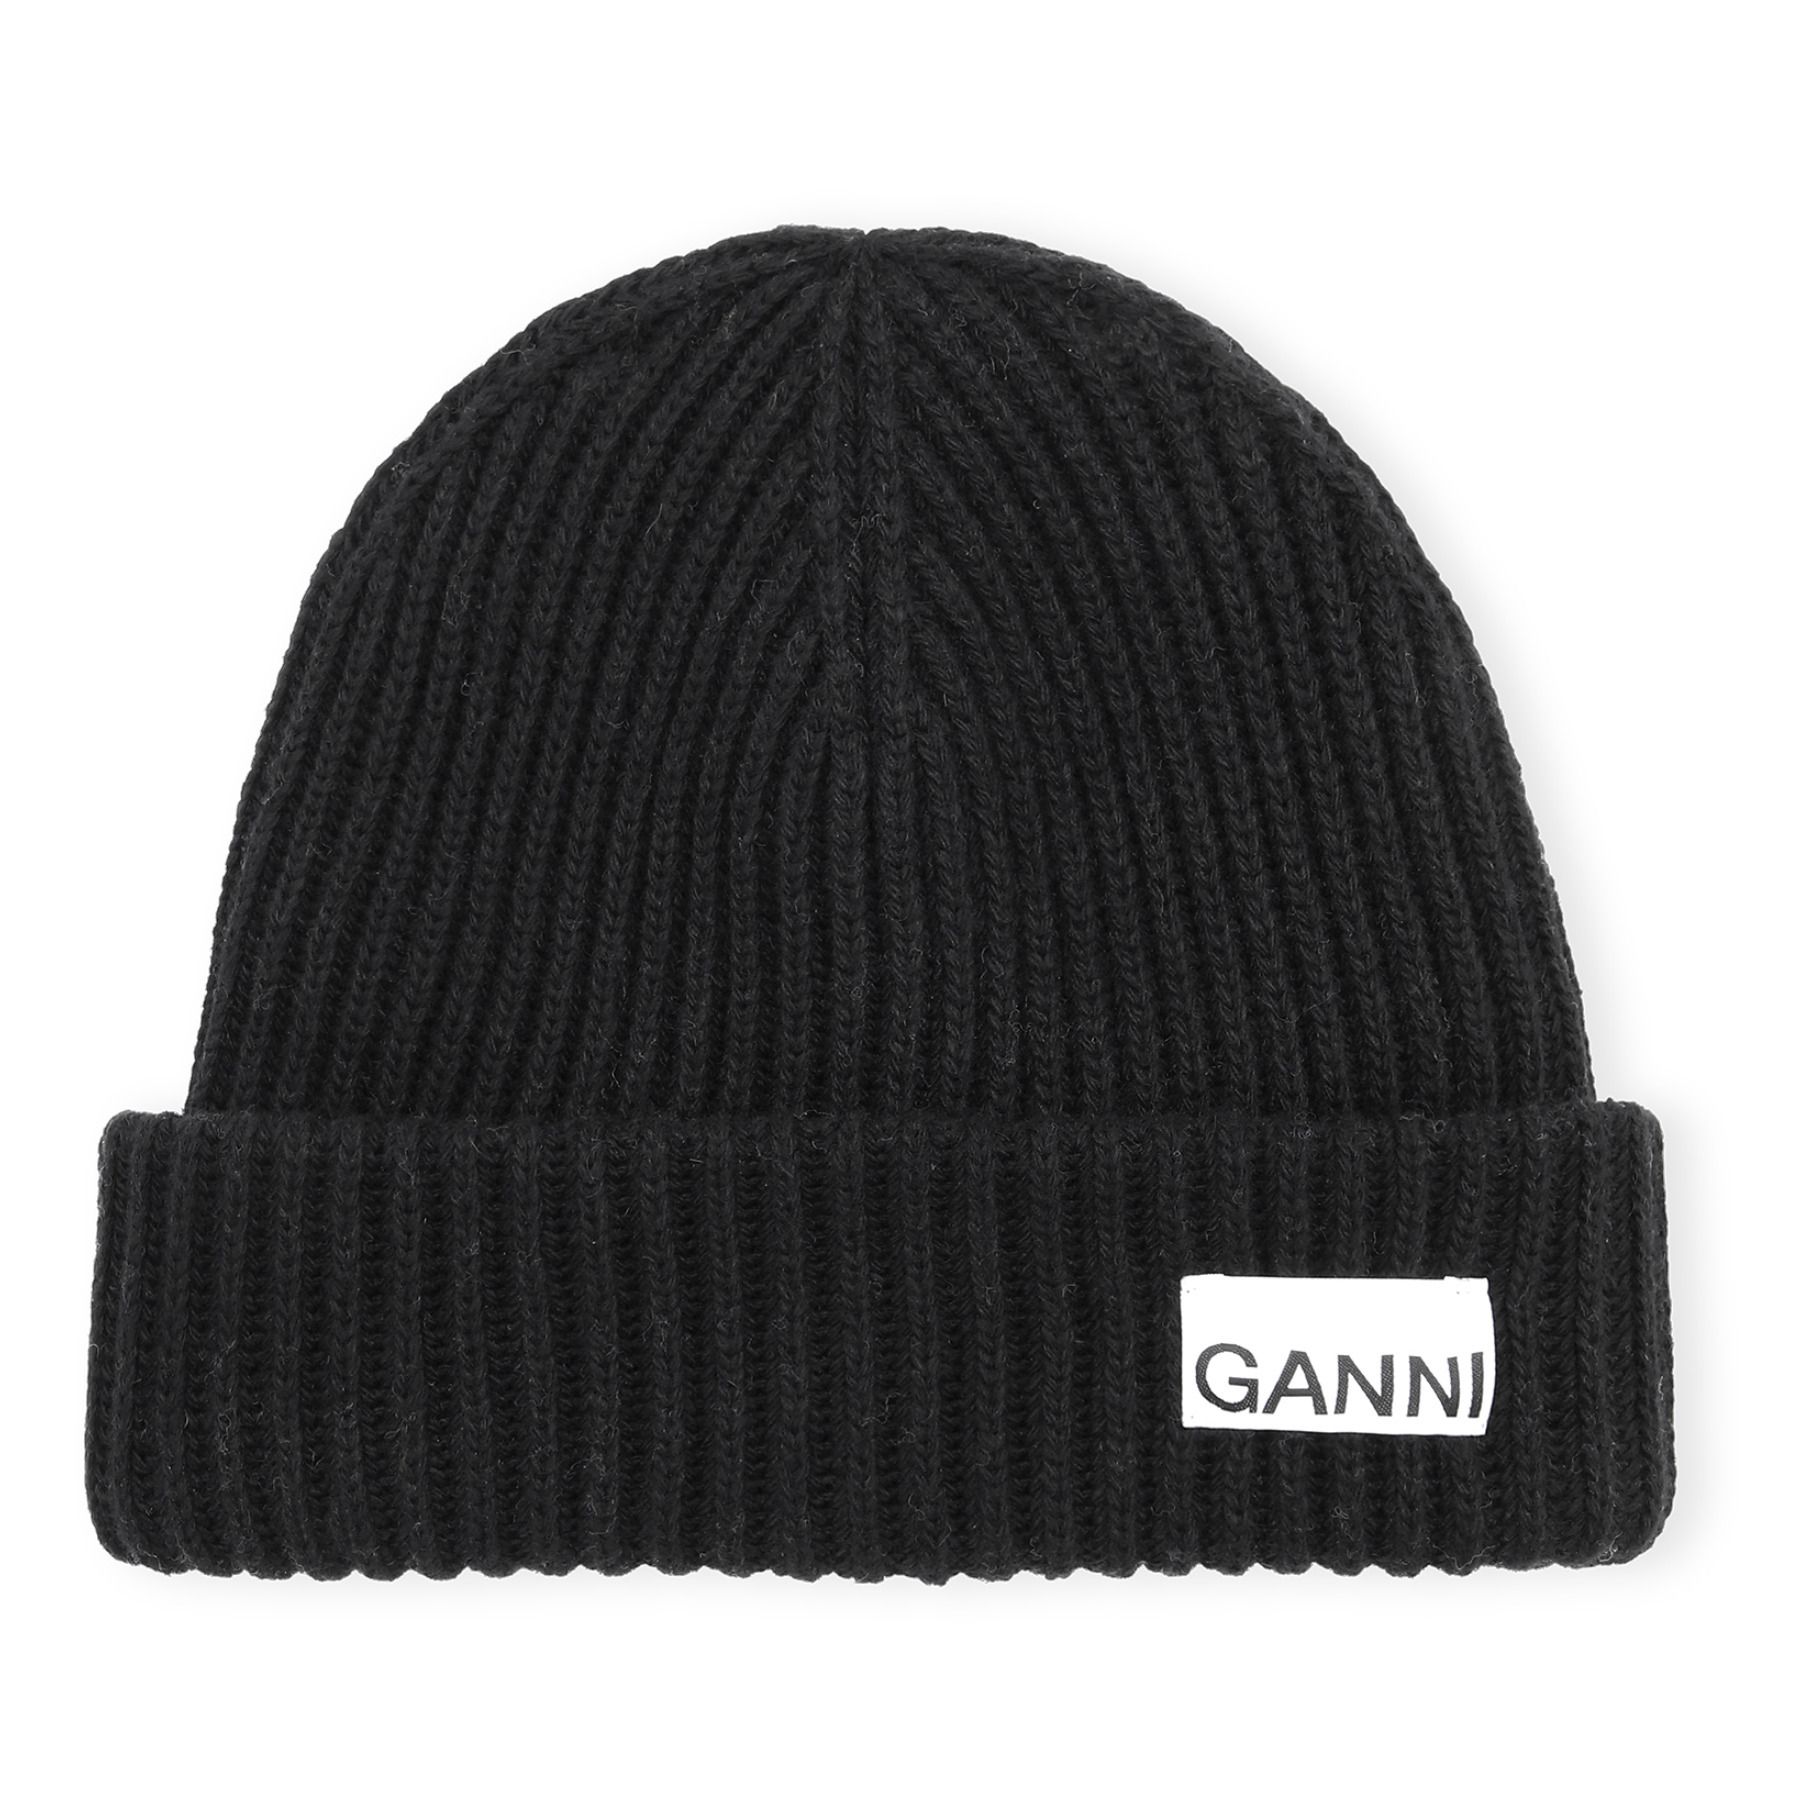 Ganni - Bonnet Laine Recyclée - Femme - Noir